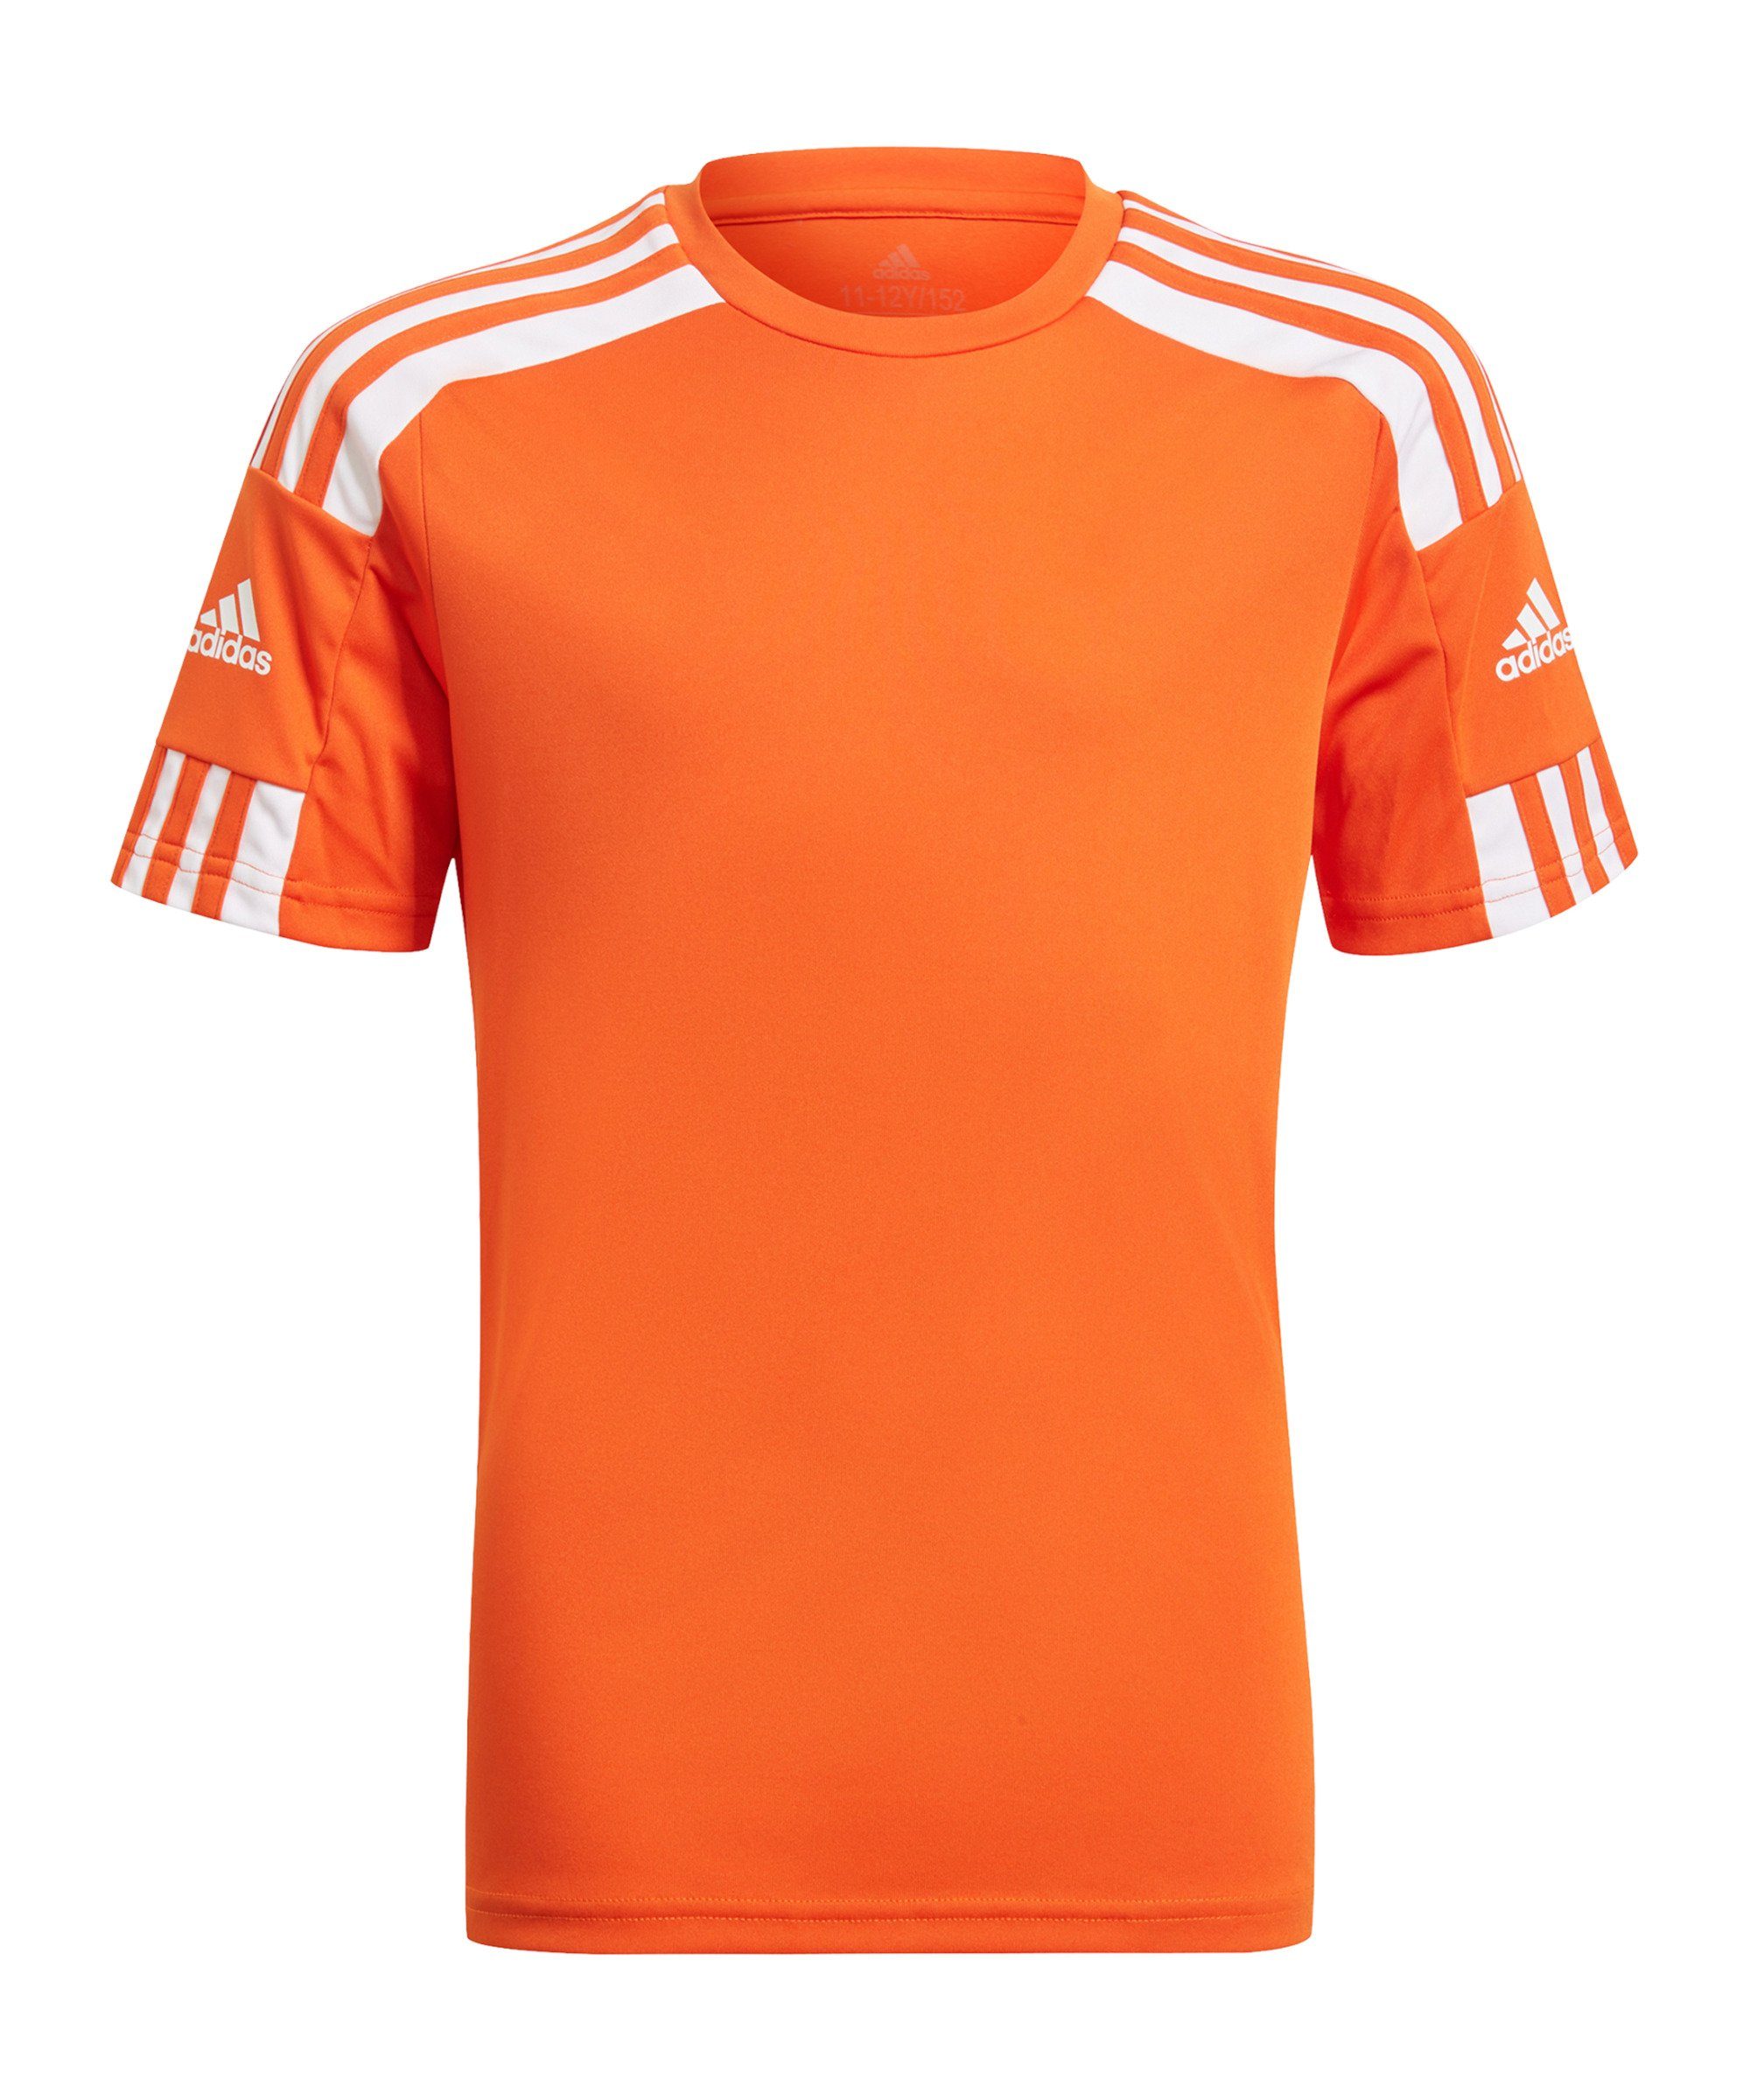 Beliebte Vorschläge adidas Performance Fußballtrikot Squadra Trikot 21 Kids orangeweiss